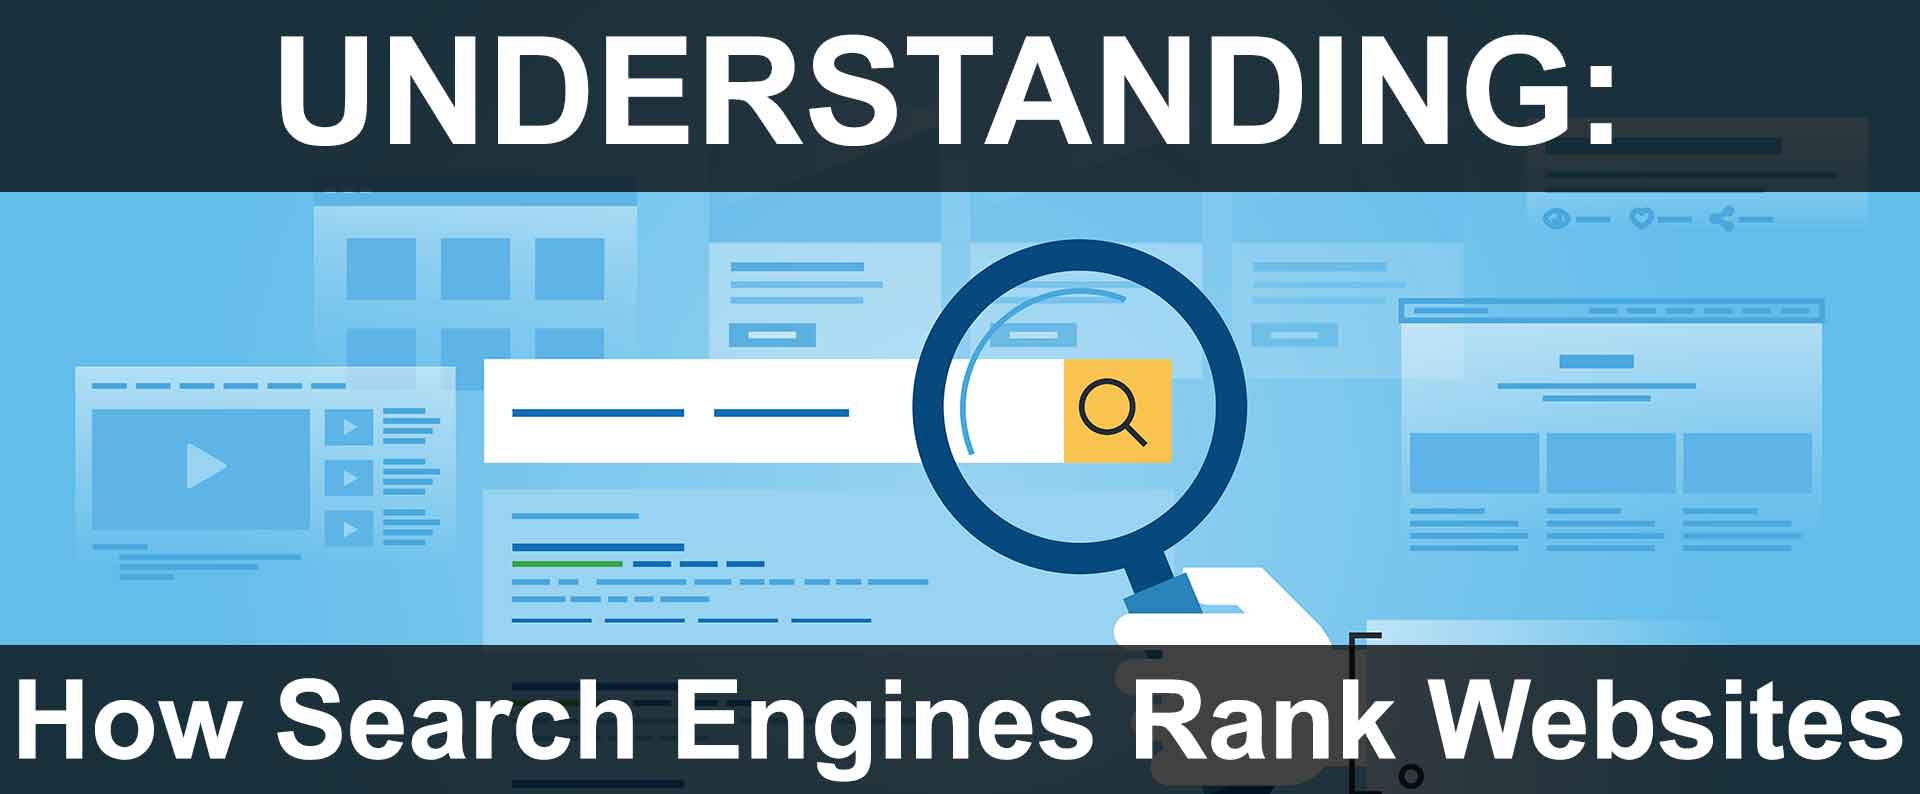 Understanding How Search Engines Rank Websites